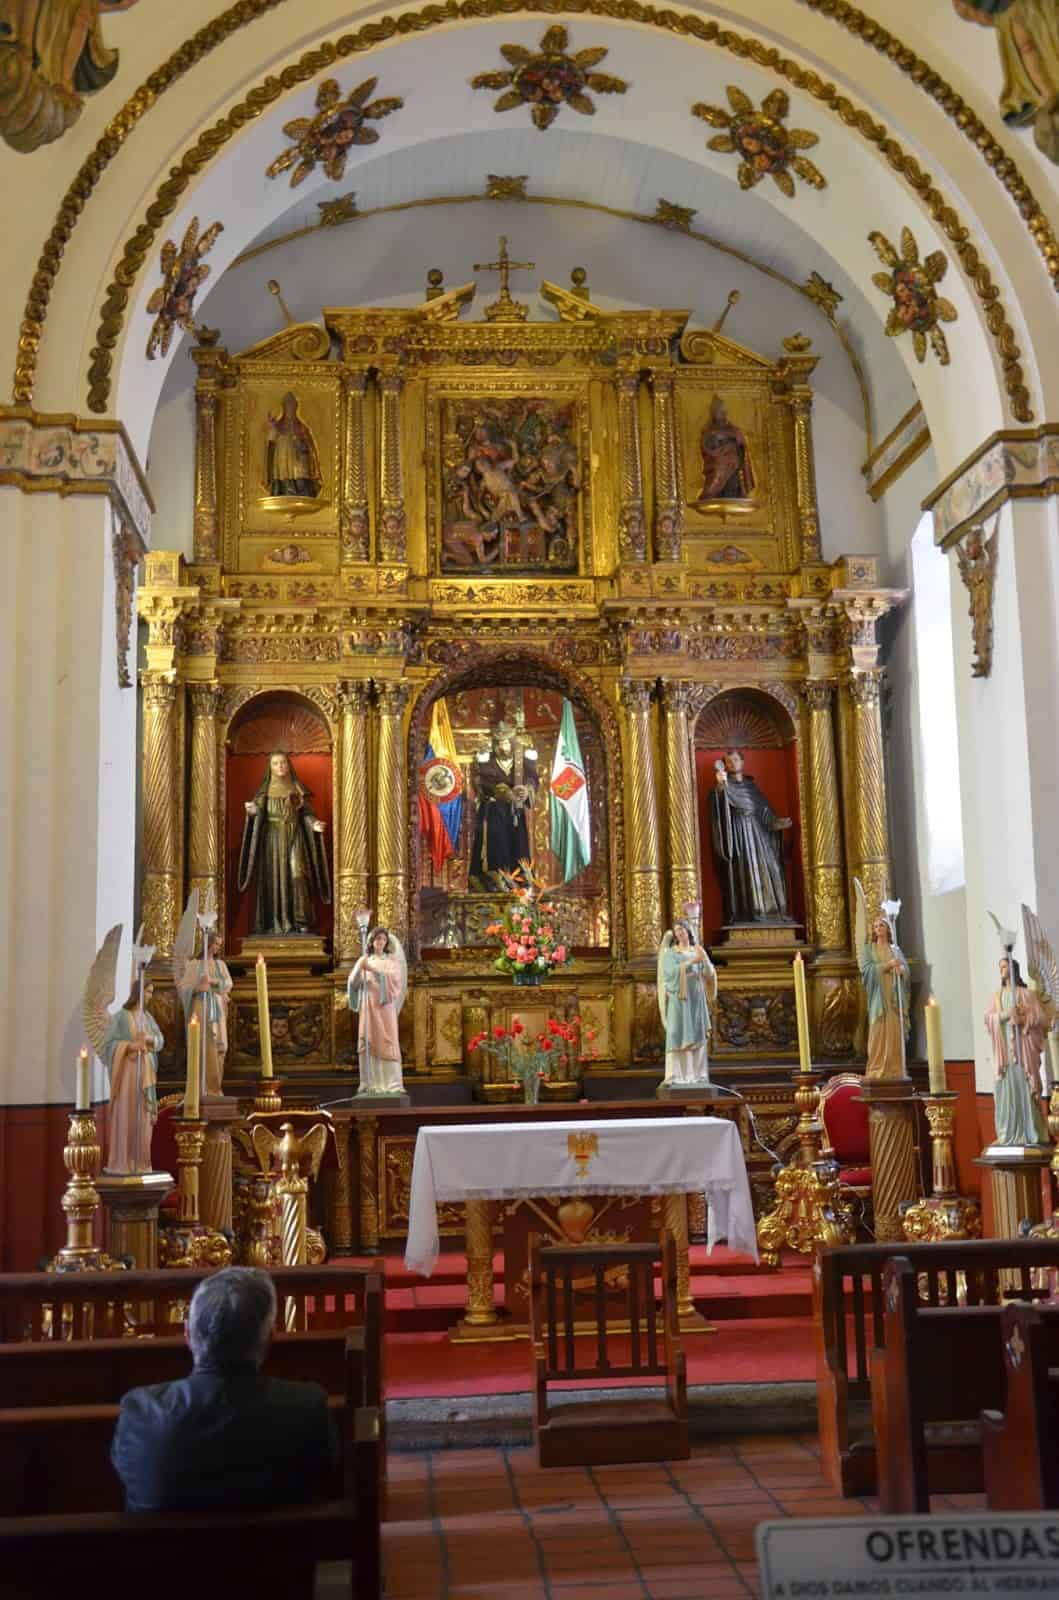 Chapel at the Church of San Agustín